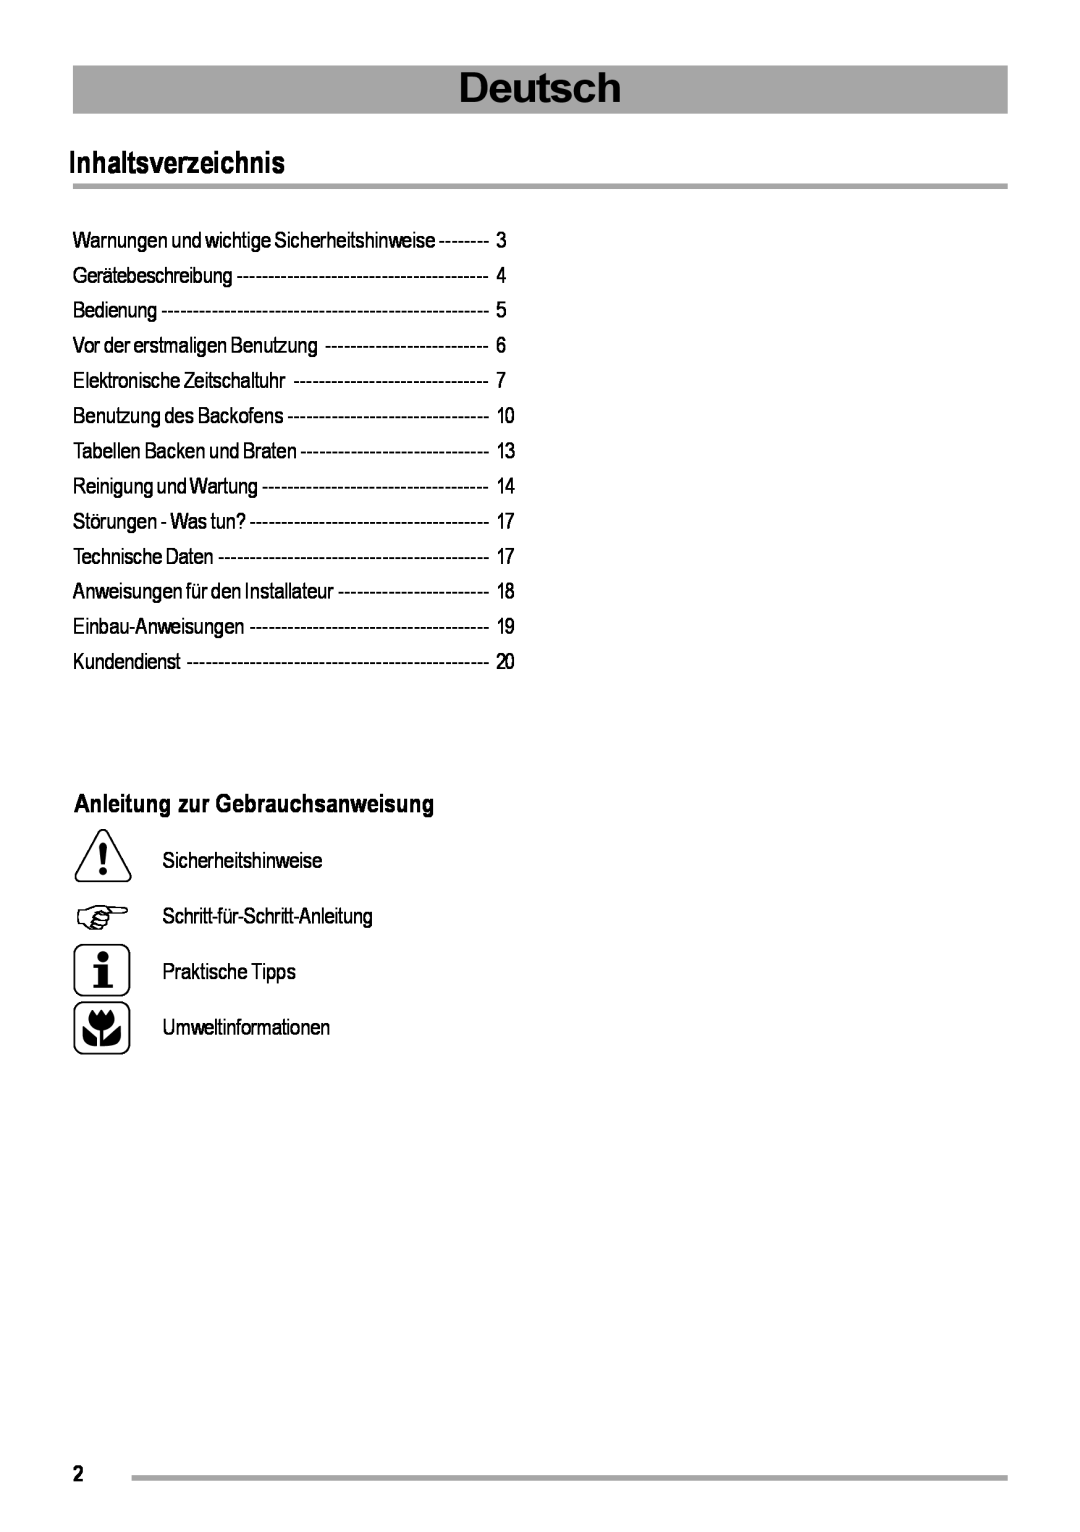 Zanussi ZOB 460 manual Deutsch, Inhaltsverzeichnis, Anleitung zur Gebrauchsanweisung, Umweltinformationen 